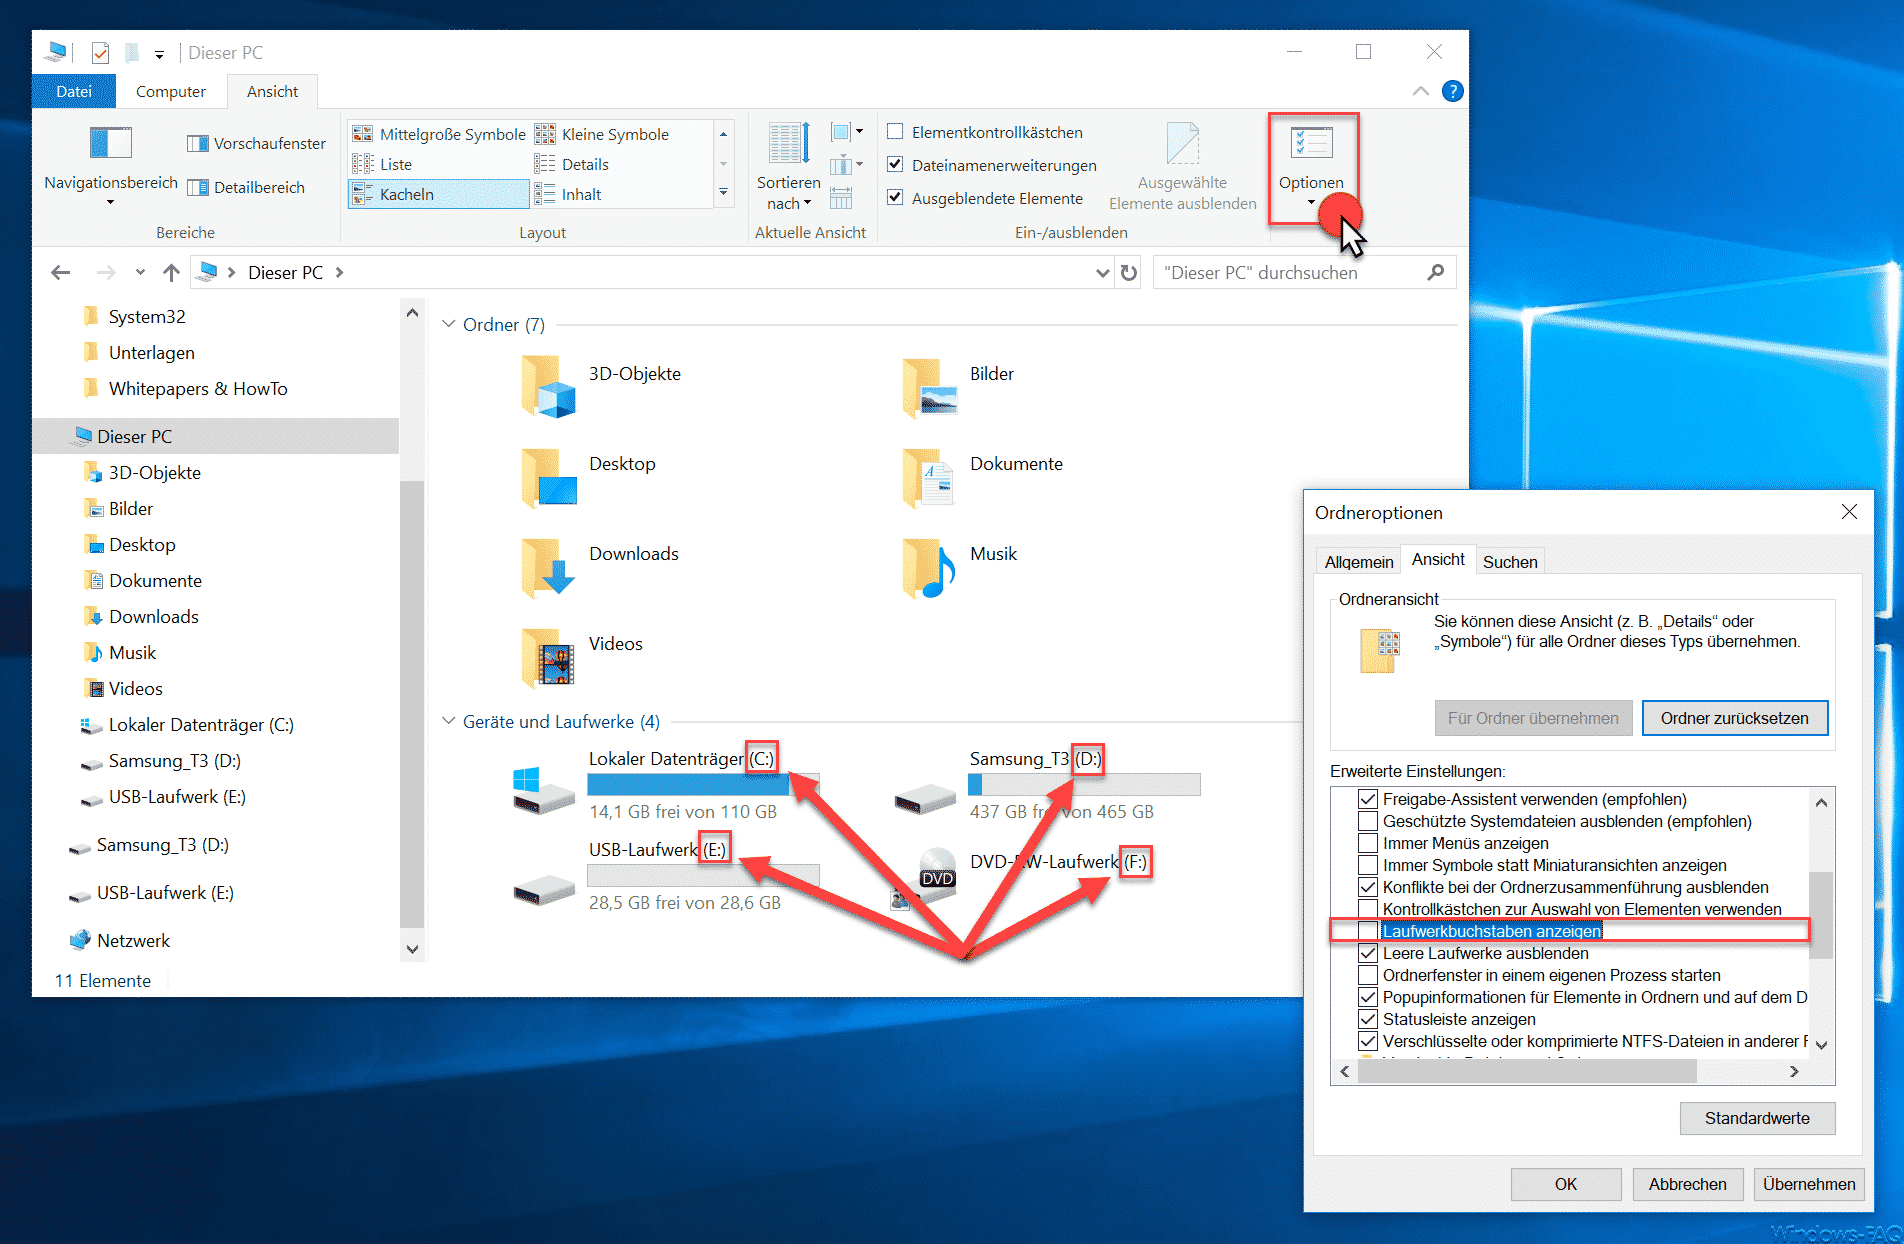 Laufwerksbuchstaben im Windows Explorer ausblenden